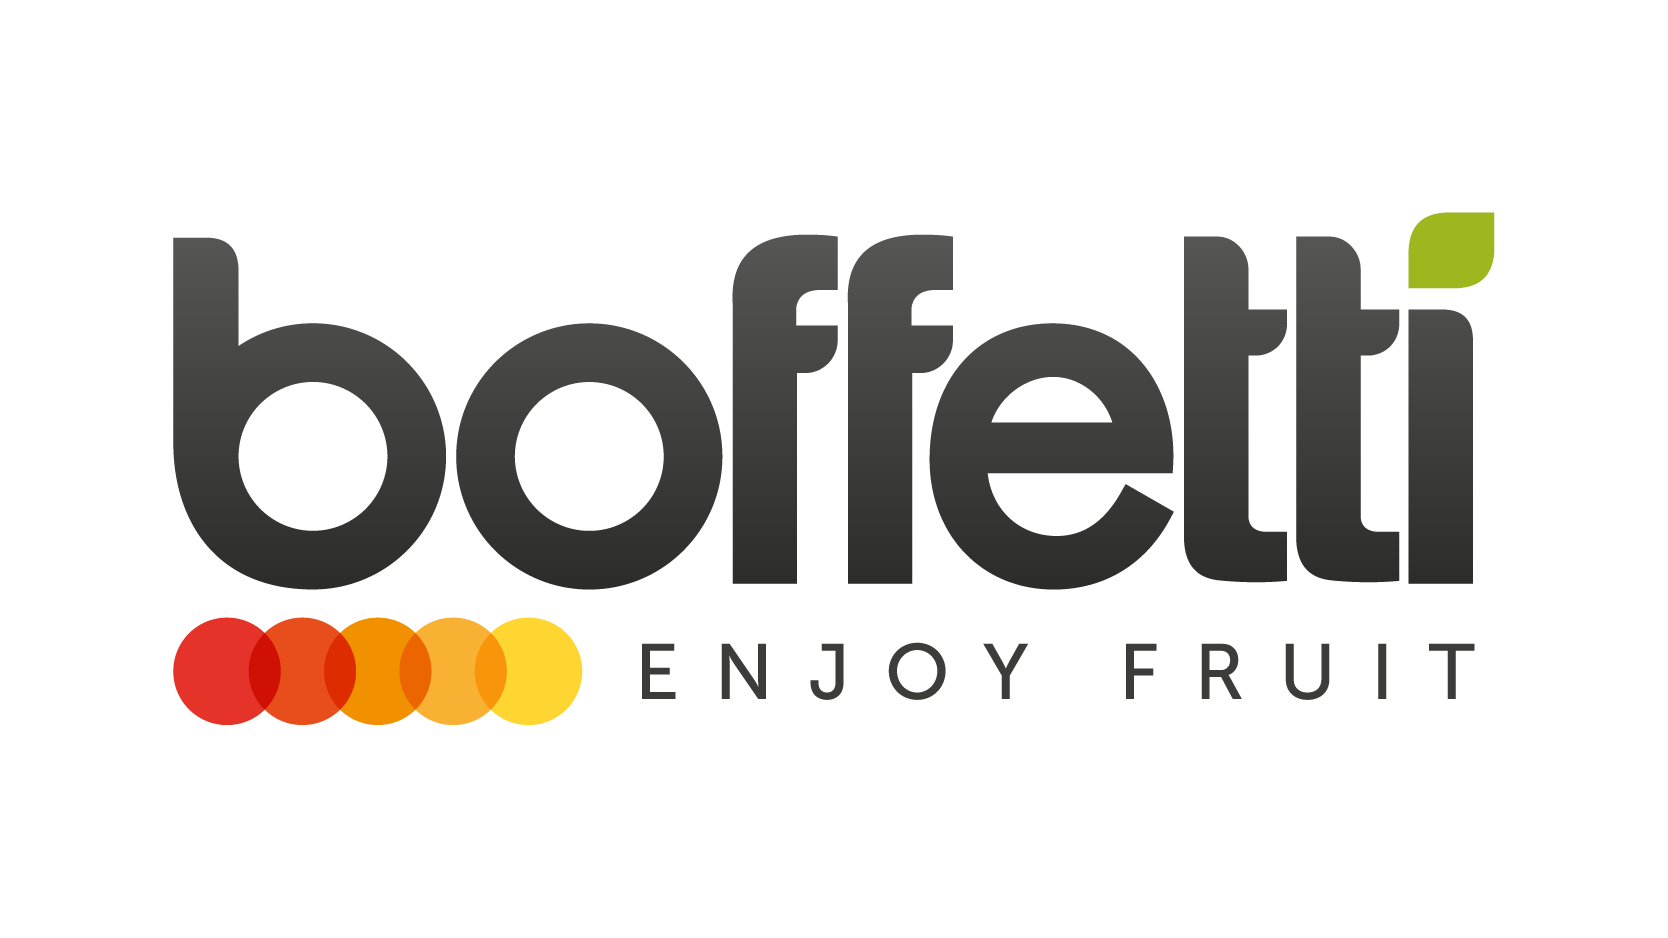 boffetti-logo